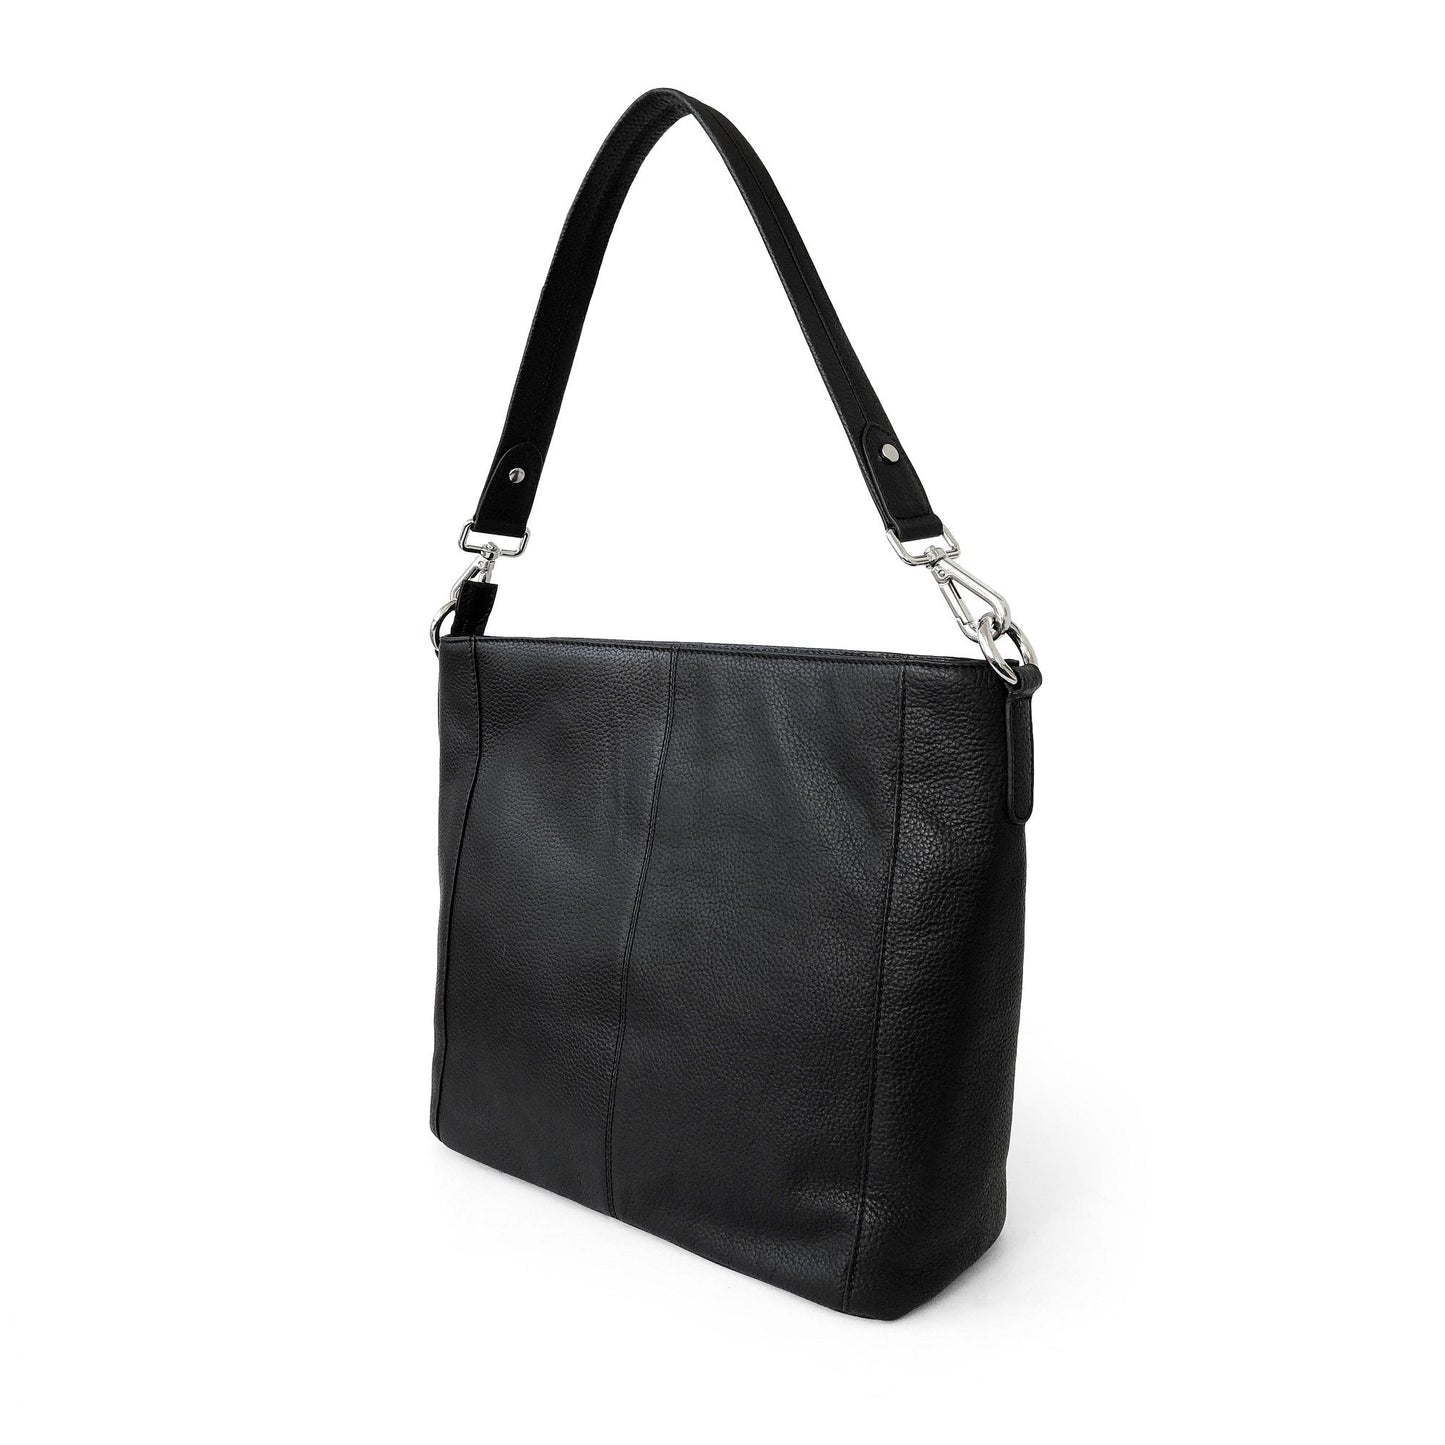 Grand sac à bandoulière Hobo en cuir avec poches zippées multiples pour femme